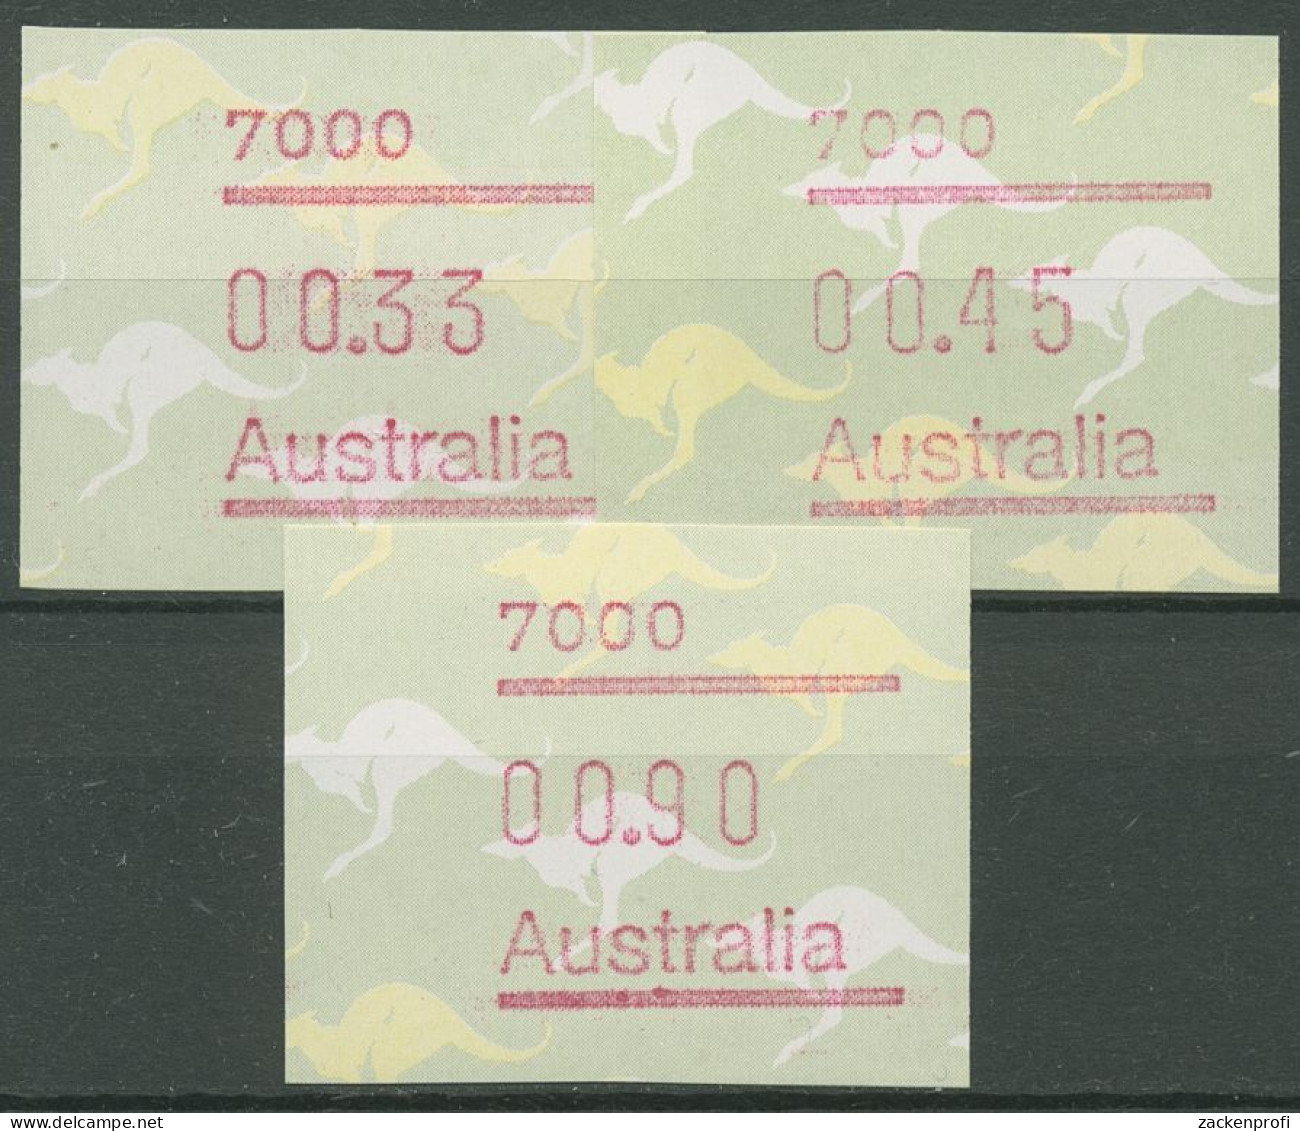 Australien 1985 Känguruh Tastensatz Automatenmarke 4 S1, 7000 Postfrisch - Vignette [ATM]